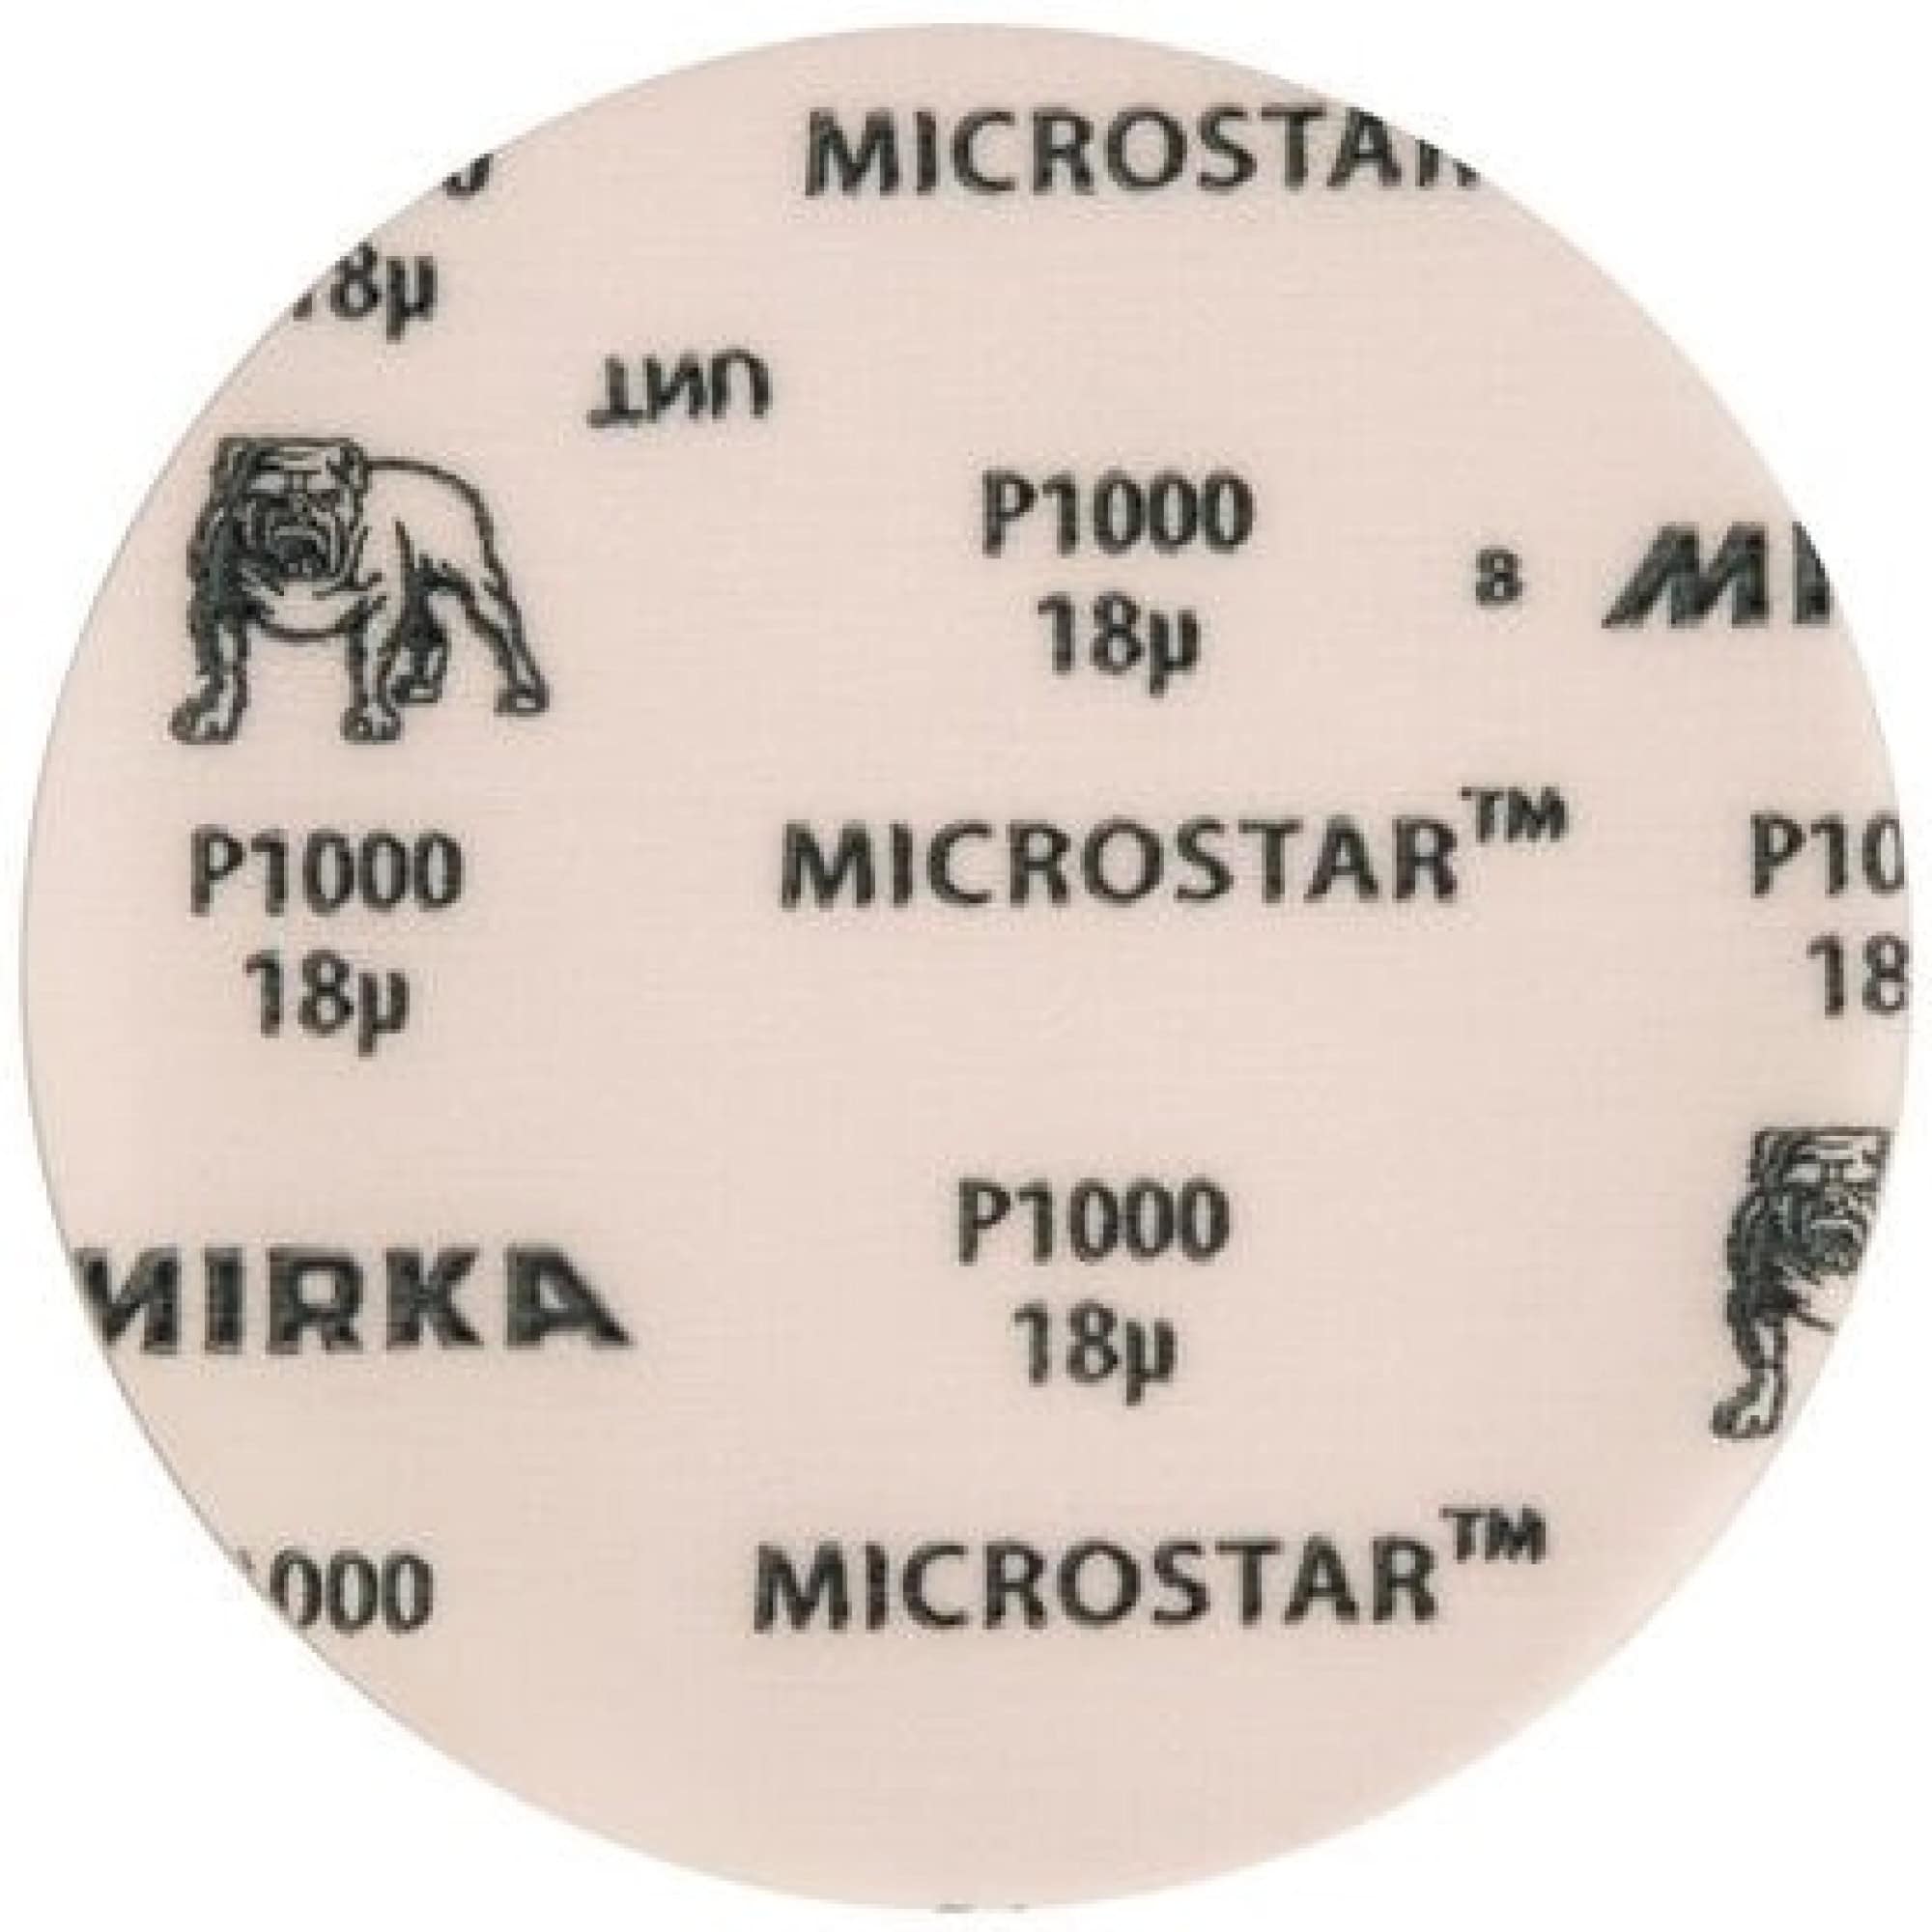 Mirka® Microstar FM62205093, Ø 150 mm, P1200, Ungelocht, Kletthaftend, Schleifscheibe mit Aluminiumkorn